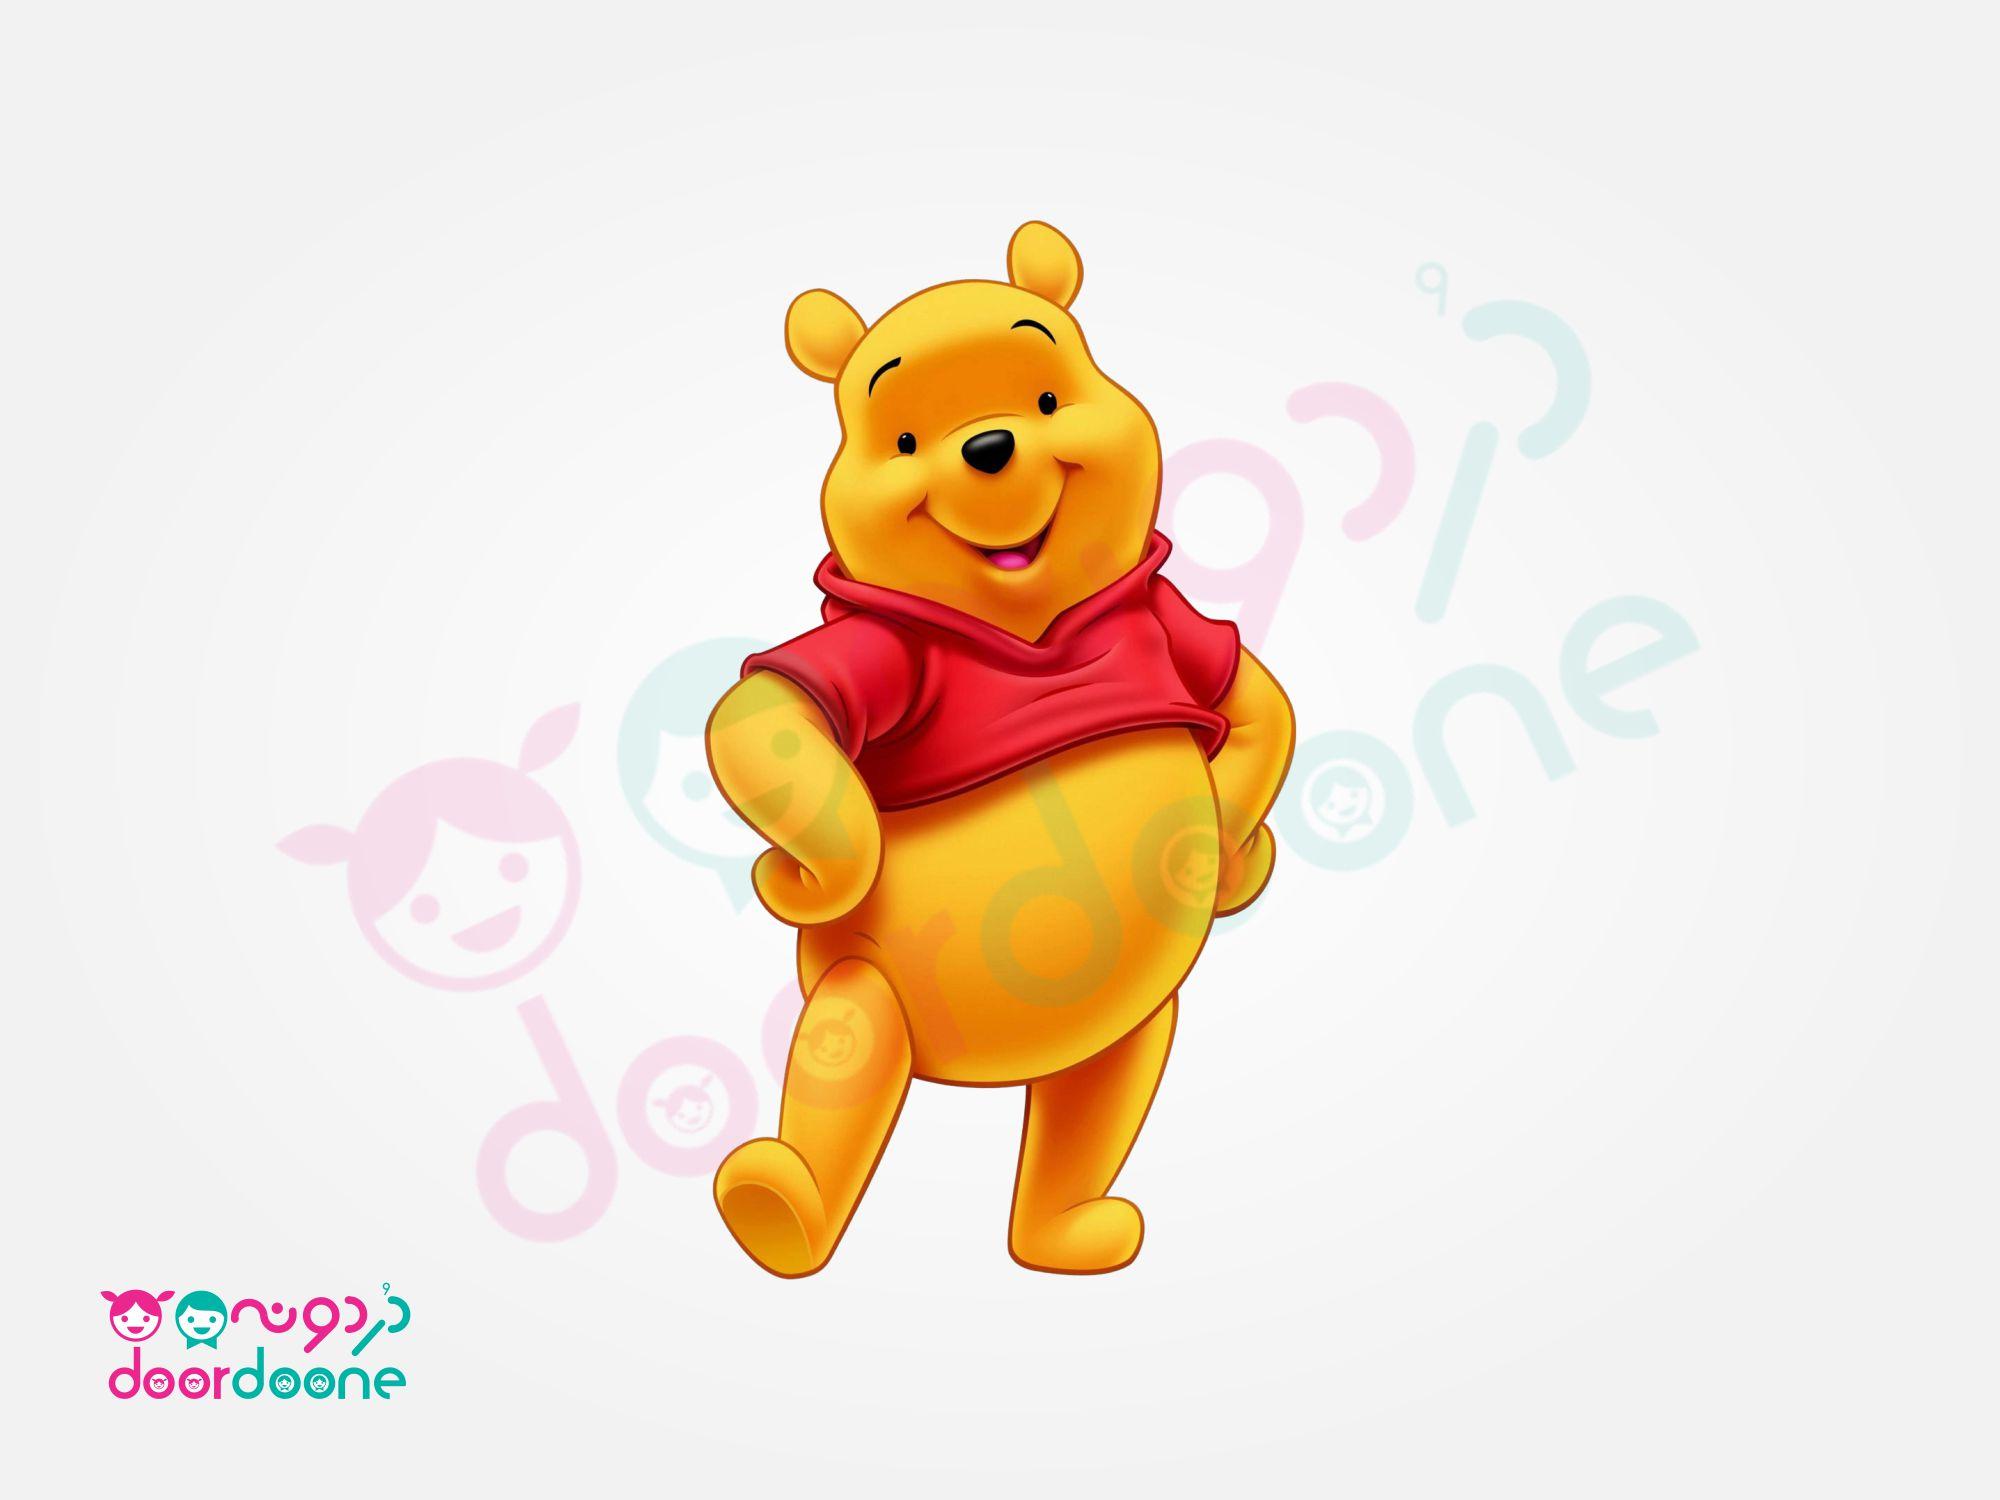 استند وينی پو (Winnie the Pooh) ارتفاع 50 سانتیمتر